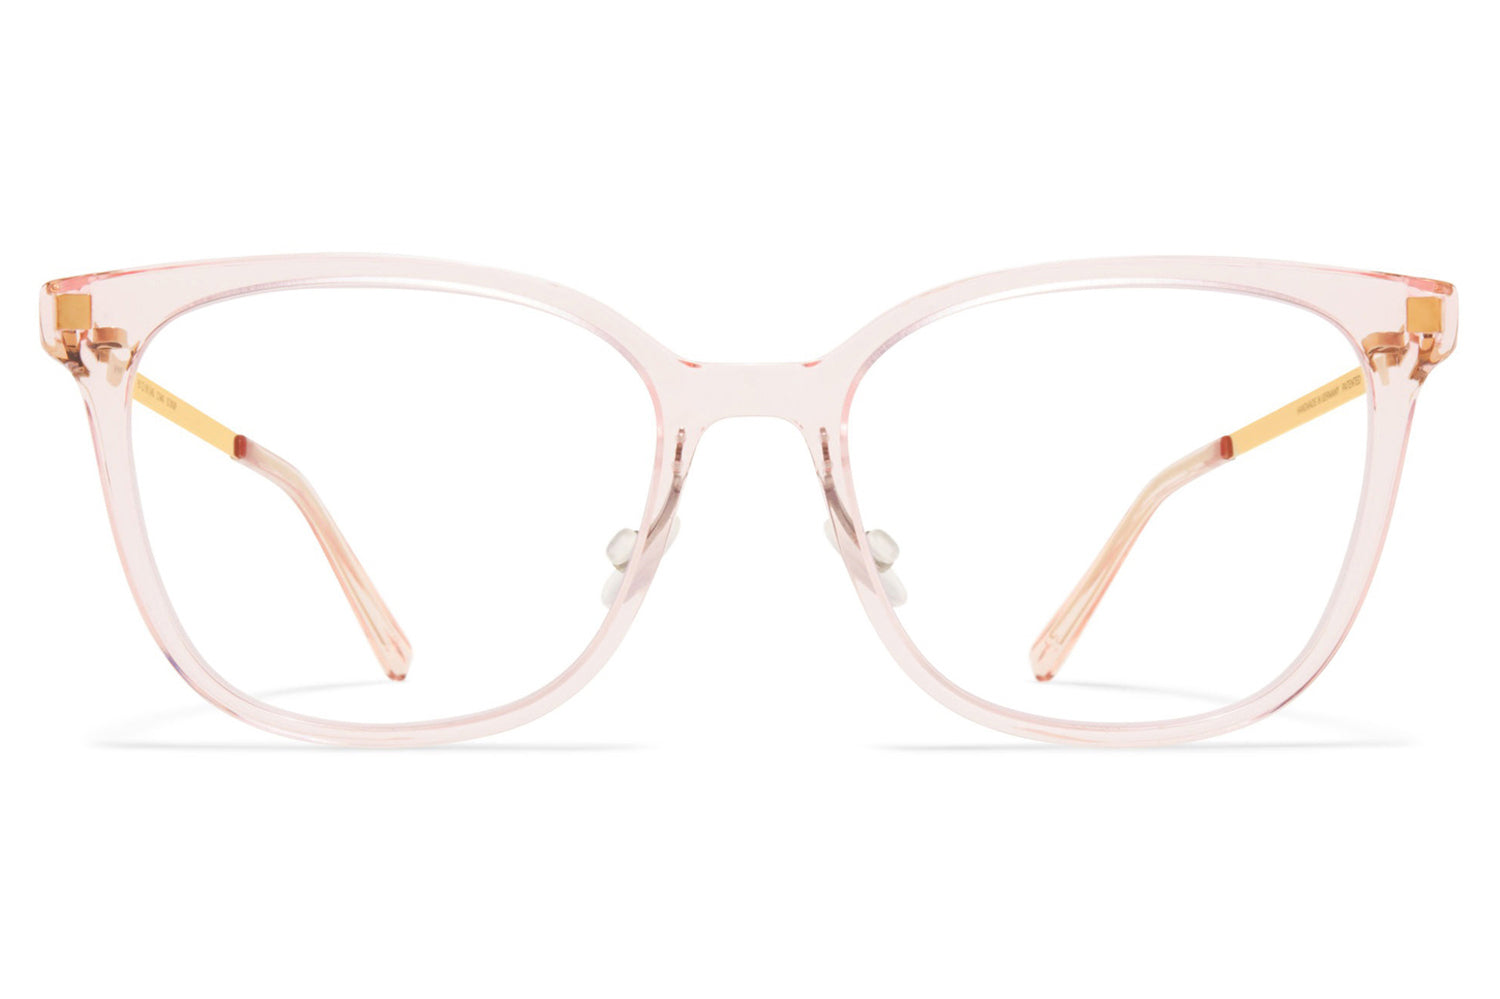 Chanel - Cat Eye Eyeglasses - Black Beige - Chanel Eyewear - Avvenice